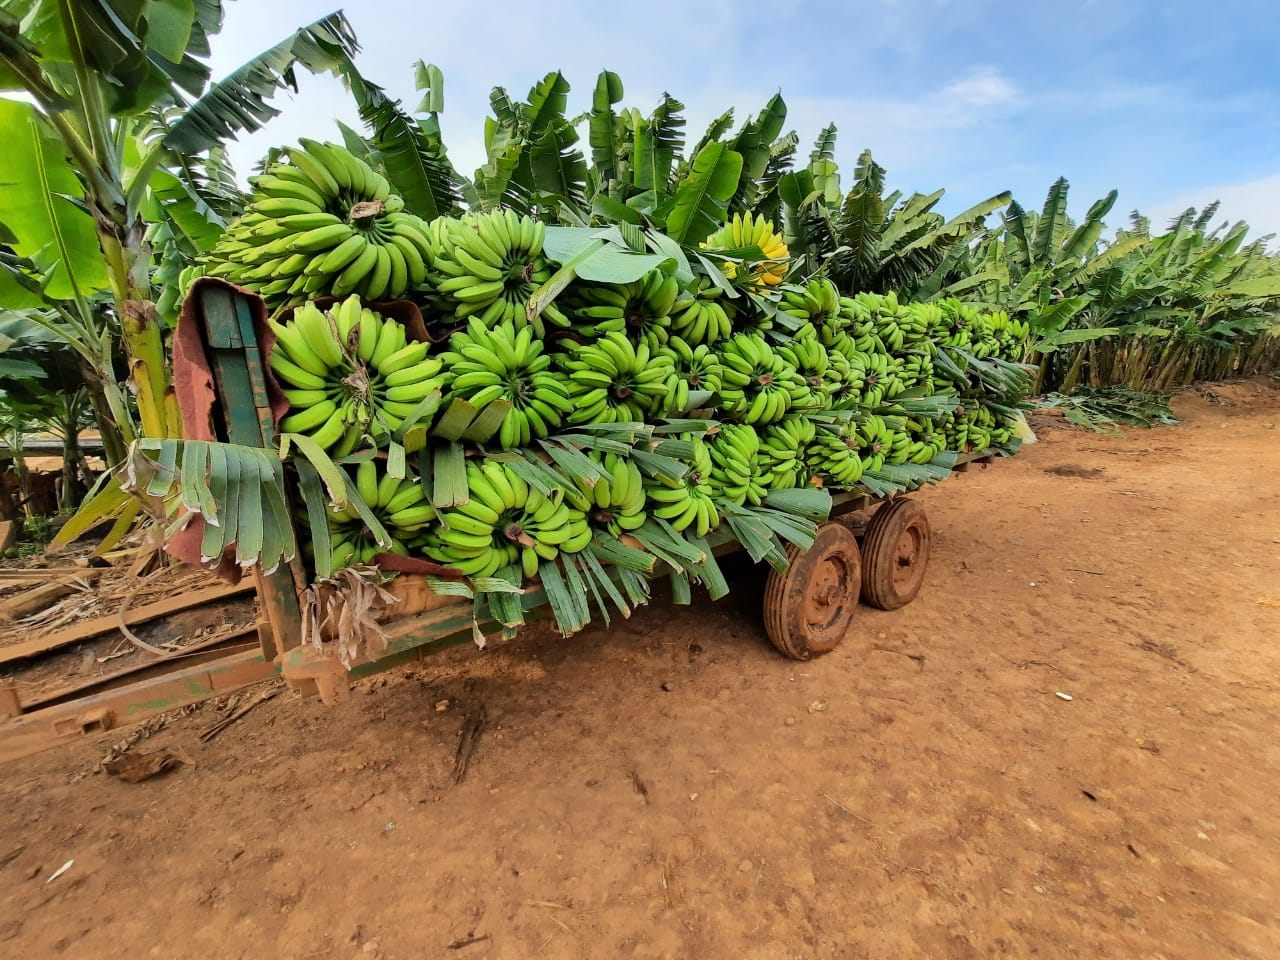 Agropecuária Familiar de Criciúma é destaque na produção de grãos, banana e tilápia